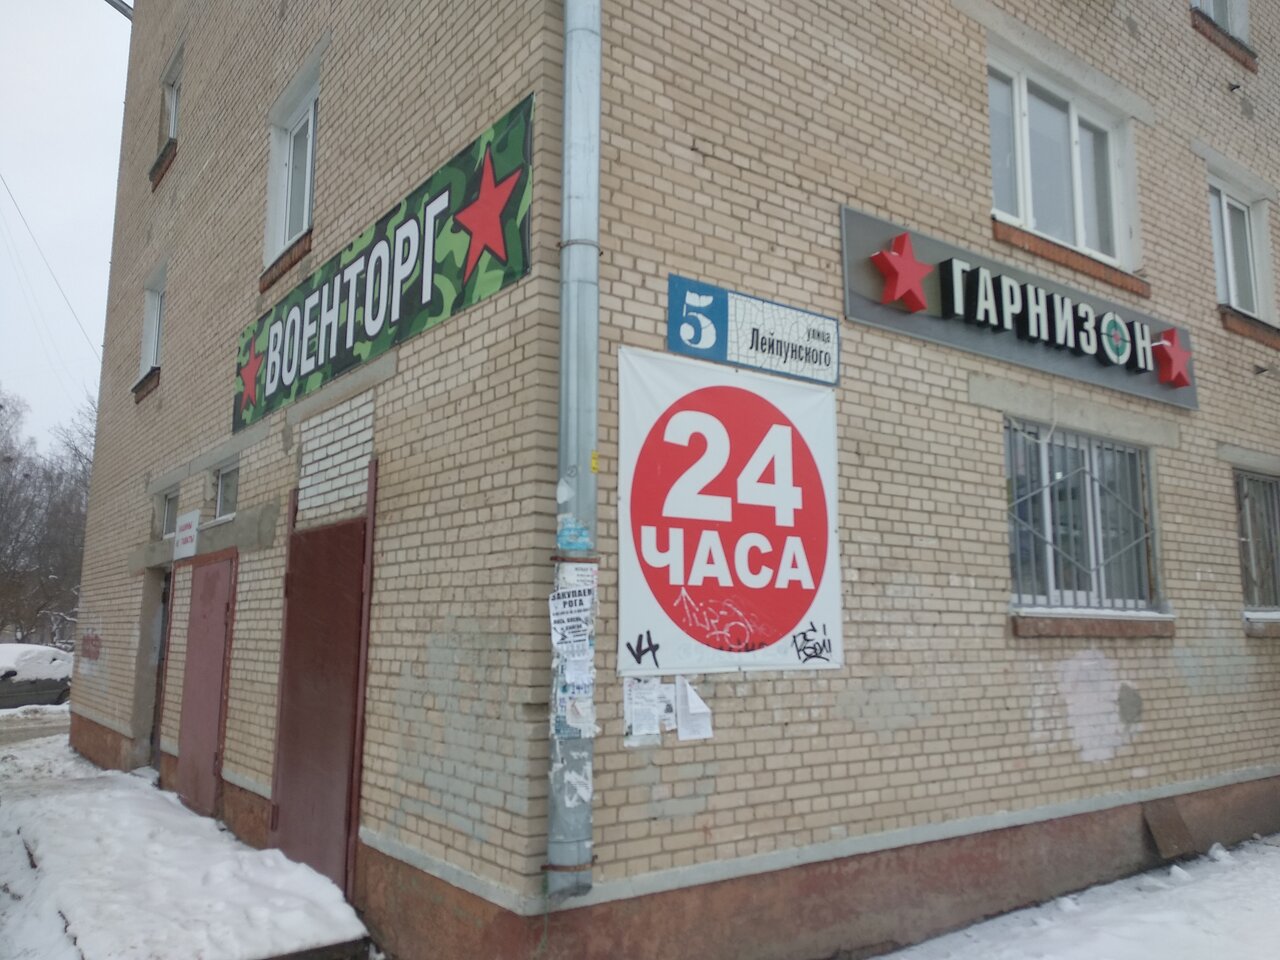 Армейский магазин "Гарнизон" на Лейпунского в Обнинске